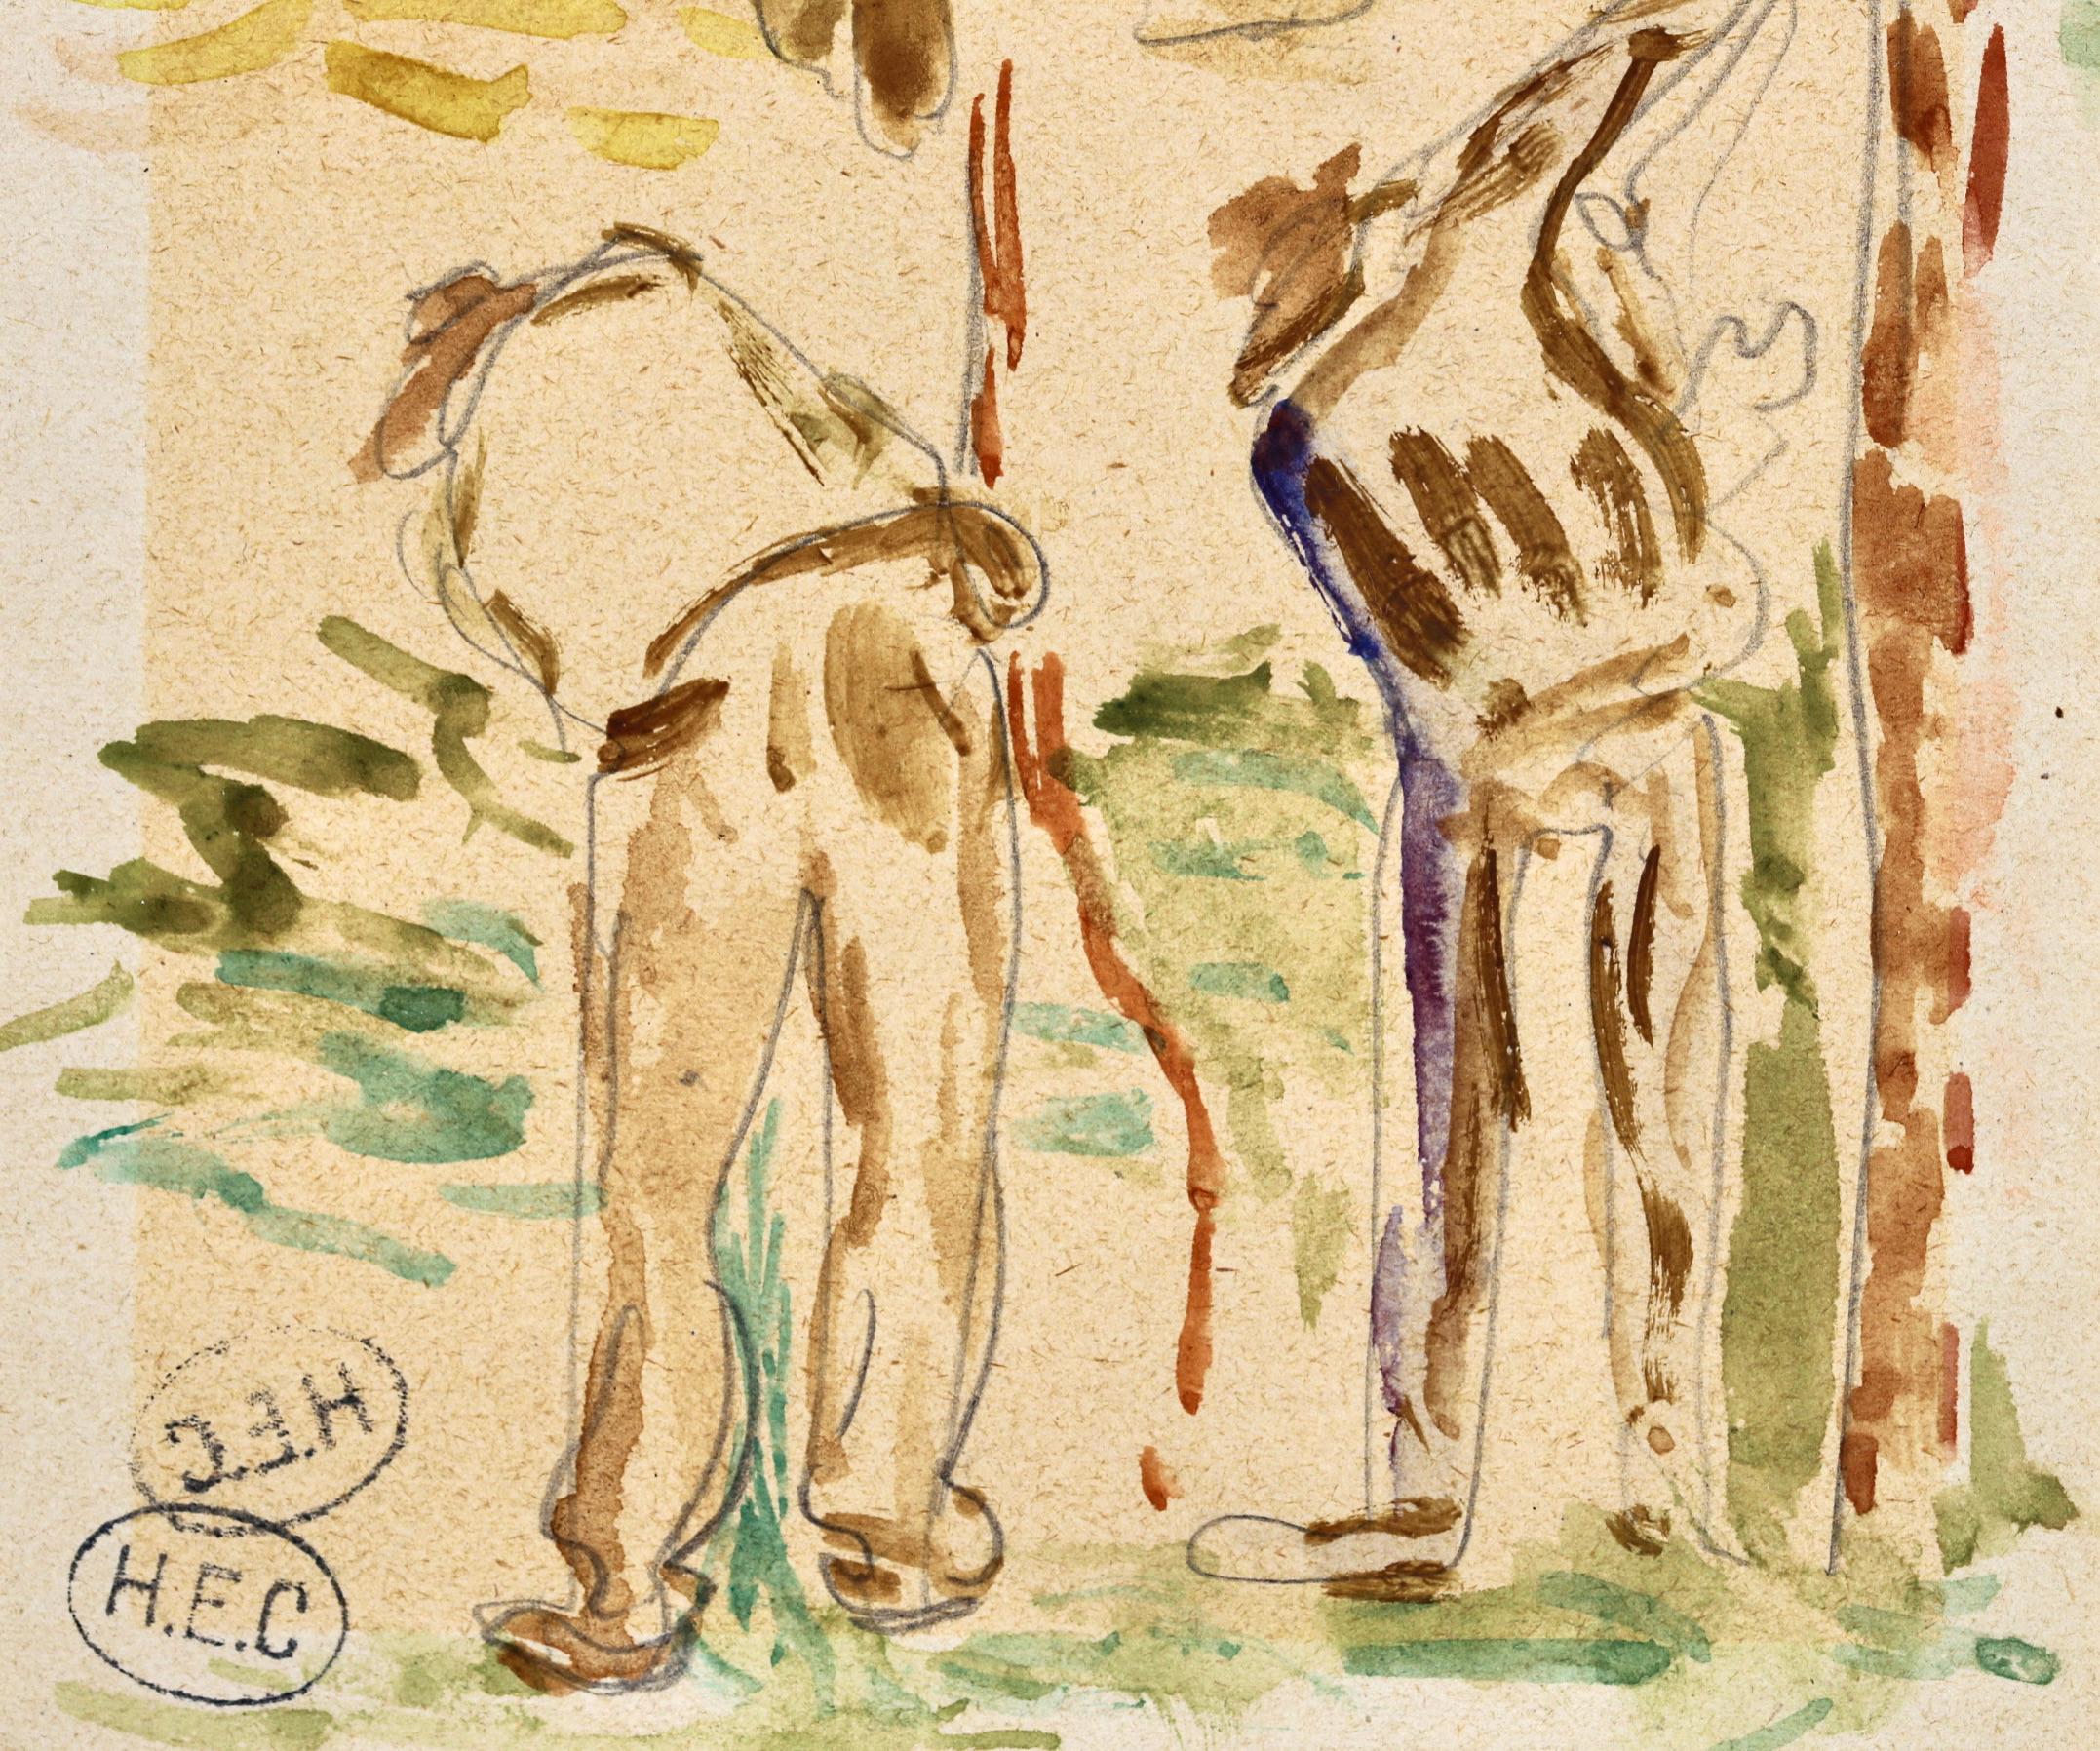 Impressionistisches Aquarell auf Papier um 1890 von dem französischen neoimpressionistischen Maler Henri Edmond Cross. Das Werk ist eine Rückansicht von drei Arbeitern in stehender und kniender Position. 

Unterschrift:
Zweimal gestempelt mit dem